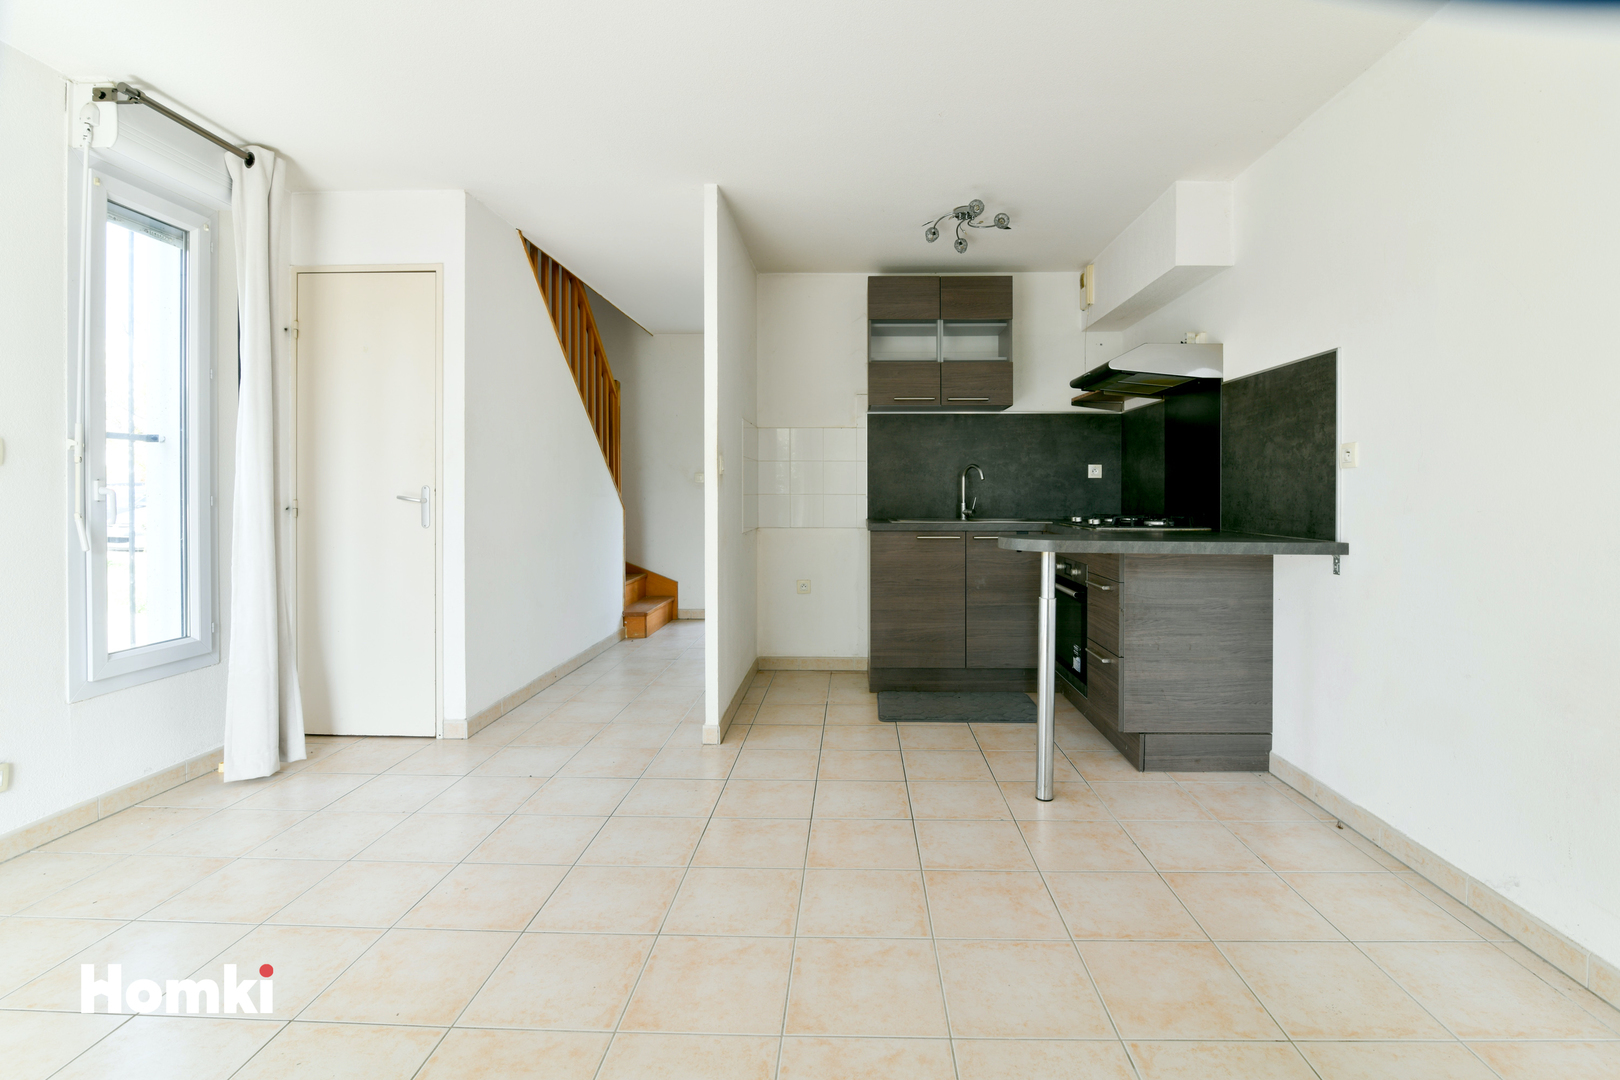 Homki - Vente Appartement  de 54.0 m² à Avignon Montfavet 84140